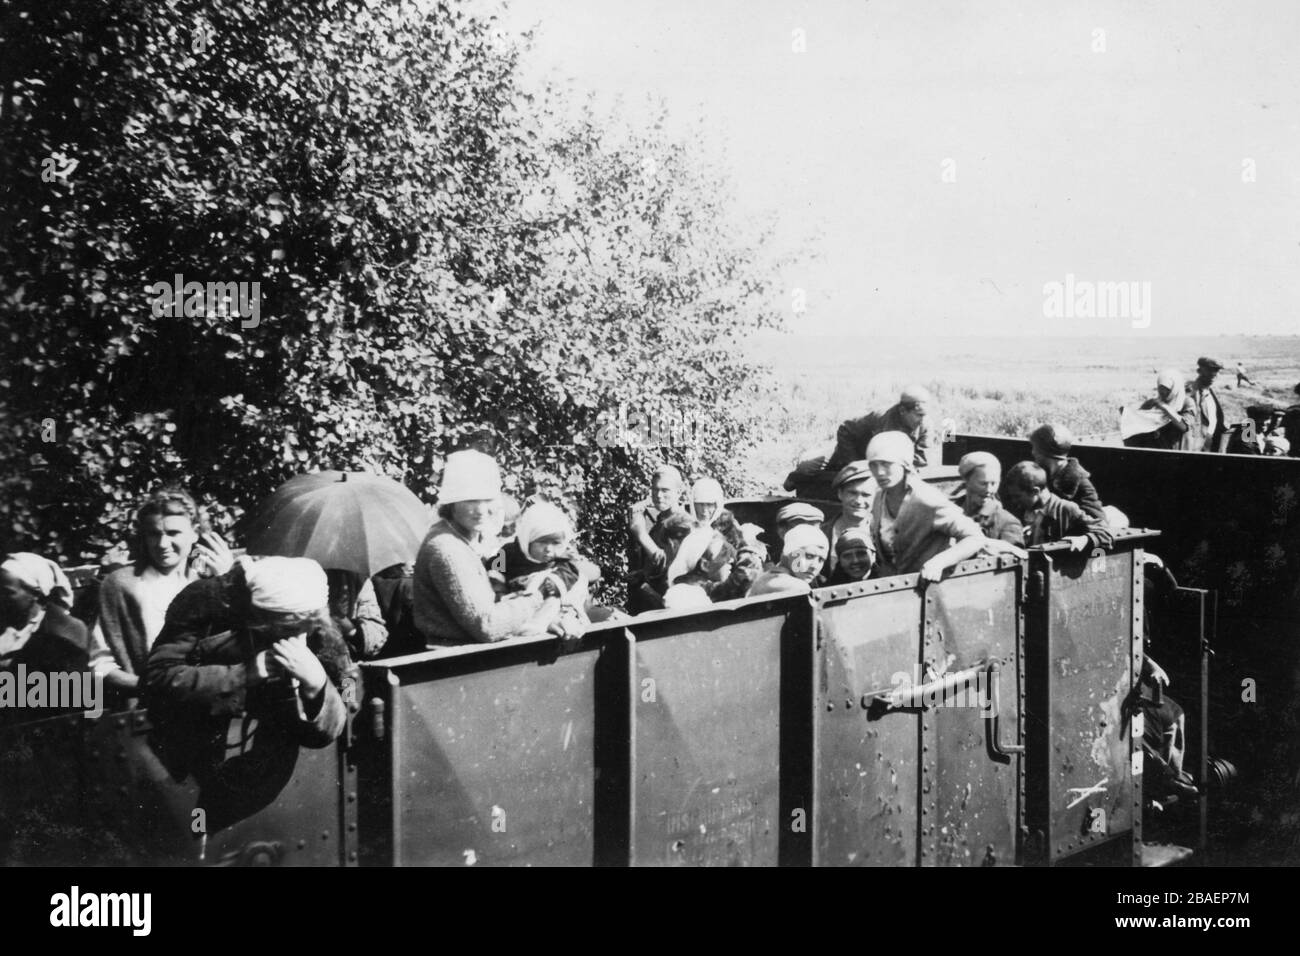 Deuxième Guerre mondiale / WWII photo historique sur l'invasion allemande en URSS 1942. Réfugiés de Voronezh (Russie) à Borisow (région de Minsk, Biélorussie) Banque D'Images